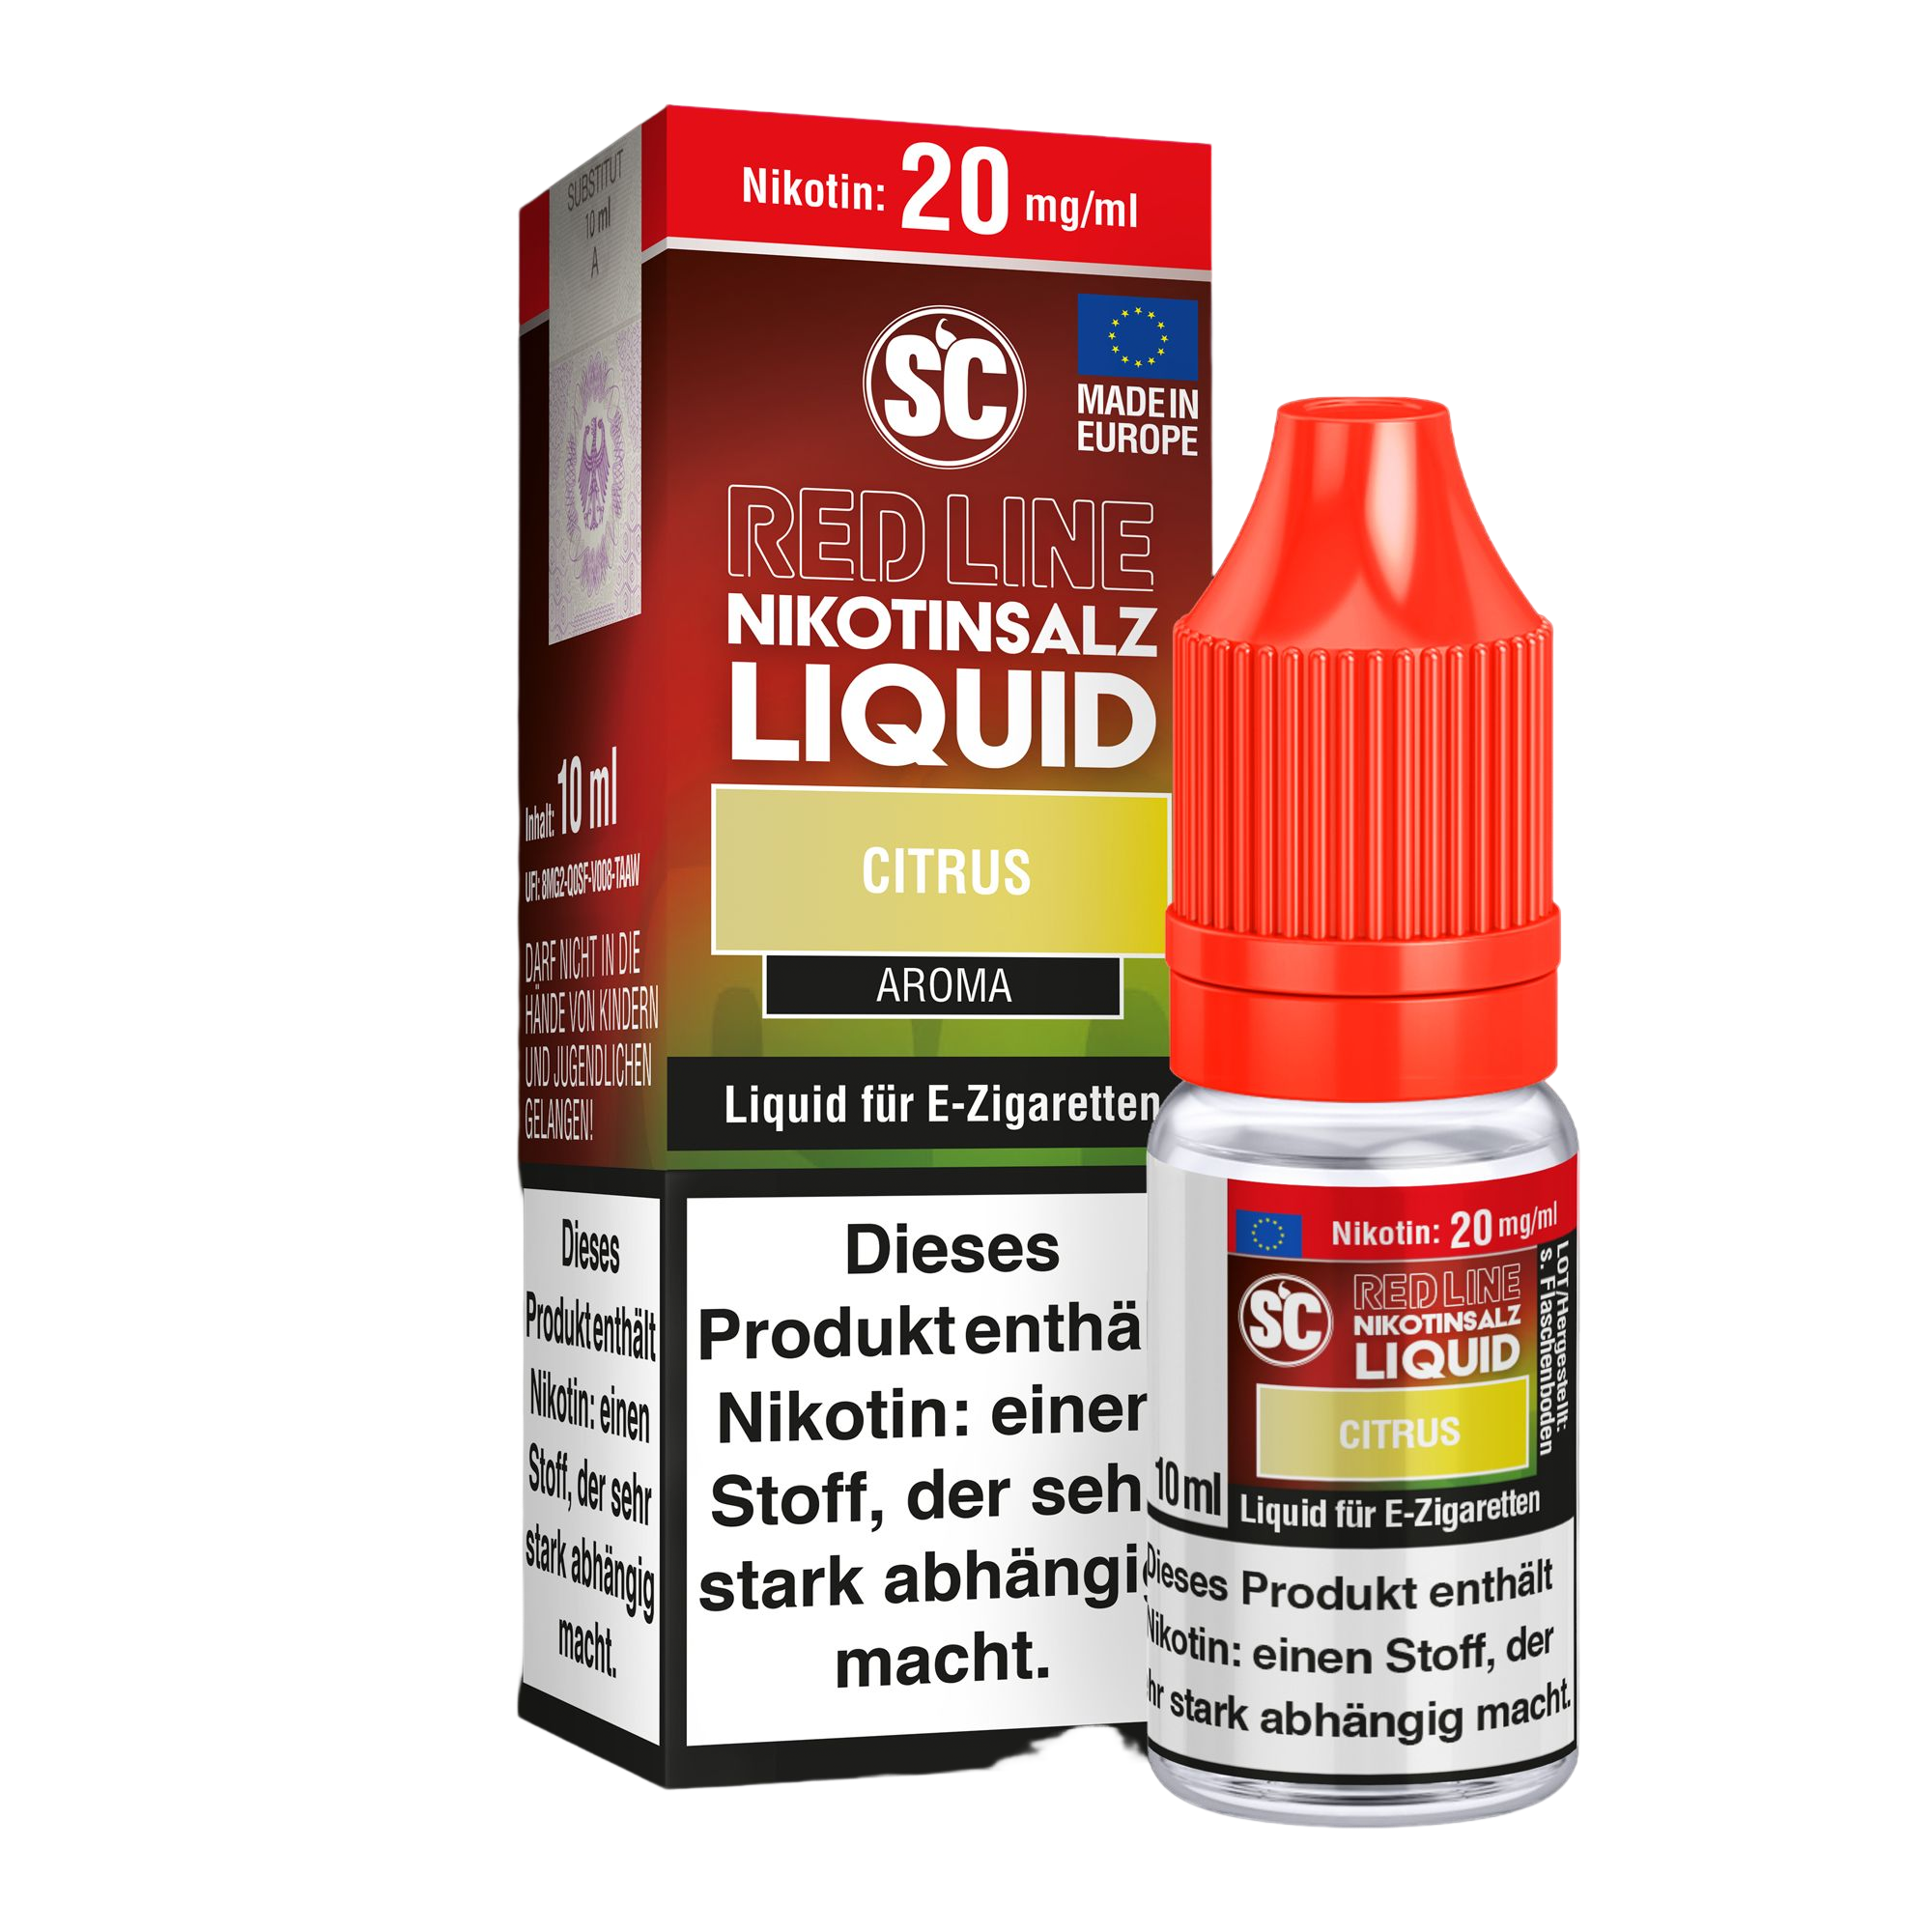 SC-RED LINE Citrus - Nikotinsalz Liquid 10 mg/ml